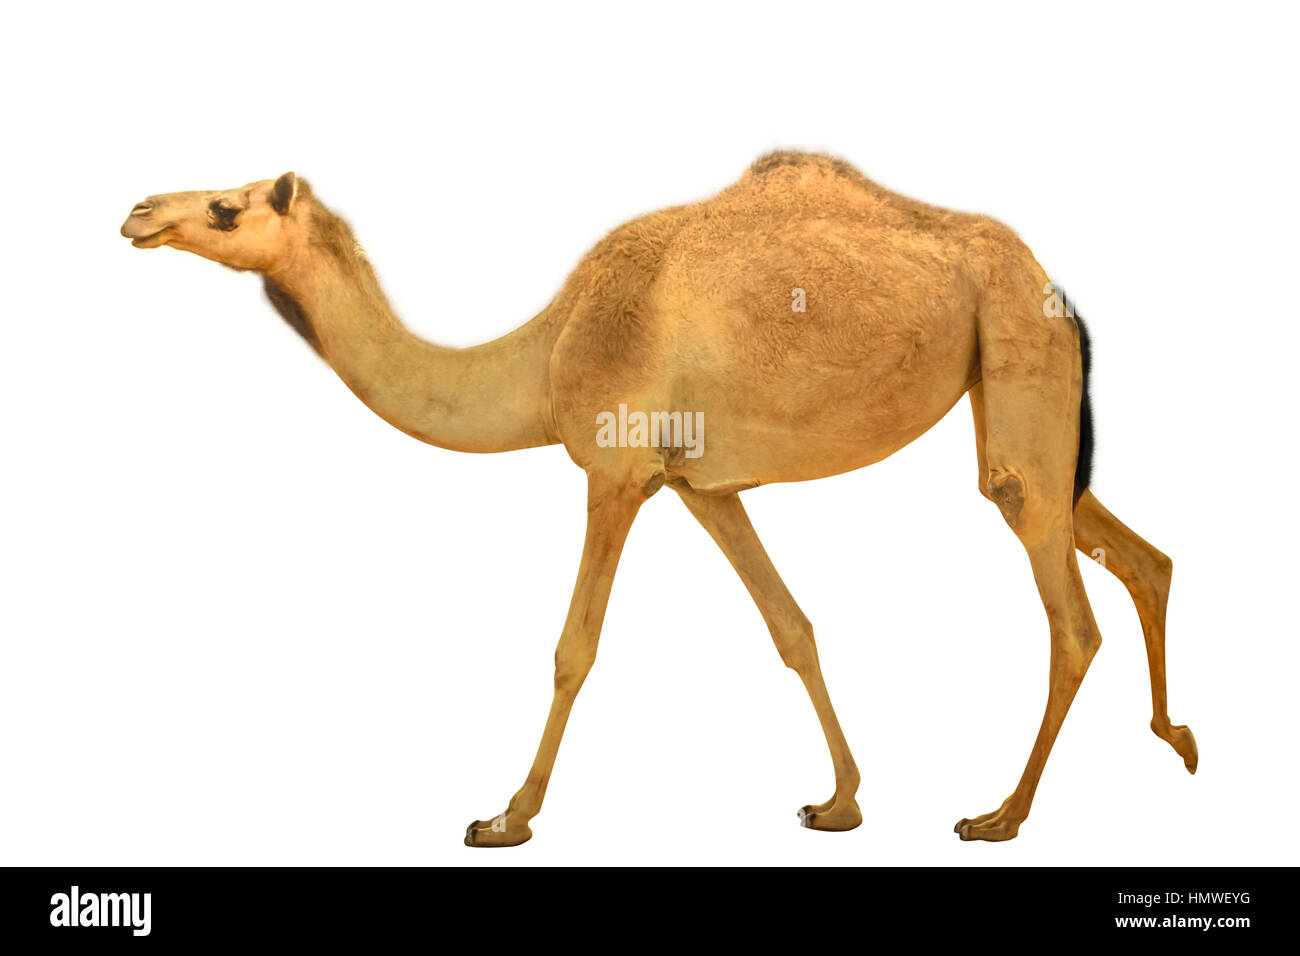 Camel dromedary isolated Stock Photo